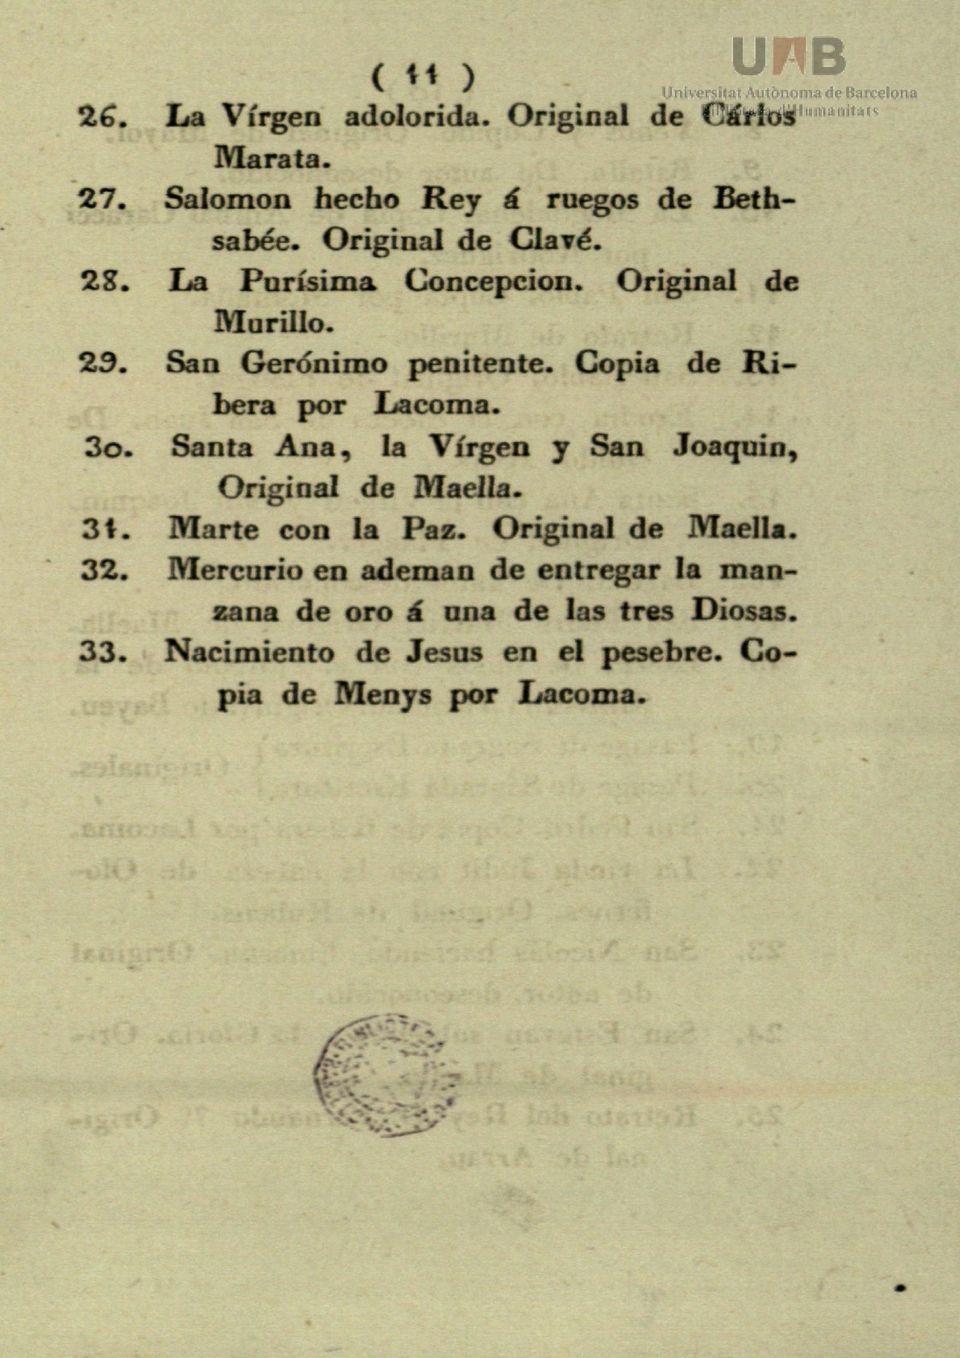 Copia de Ribera por Lacoma. 30. Santa Ana, la Virgen y San Joaquín, Original de Maella. 31. Marte con la Paz.